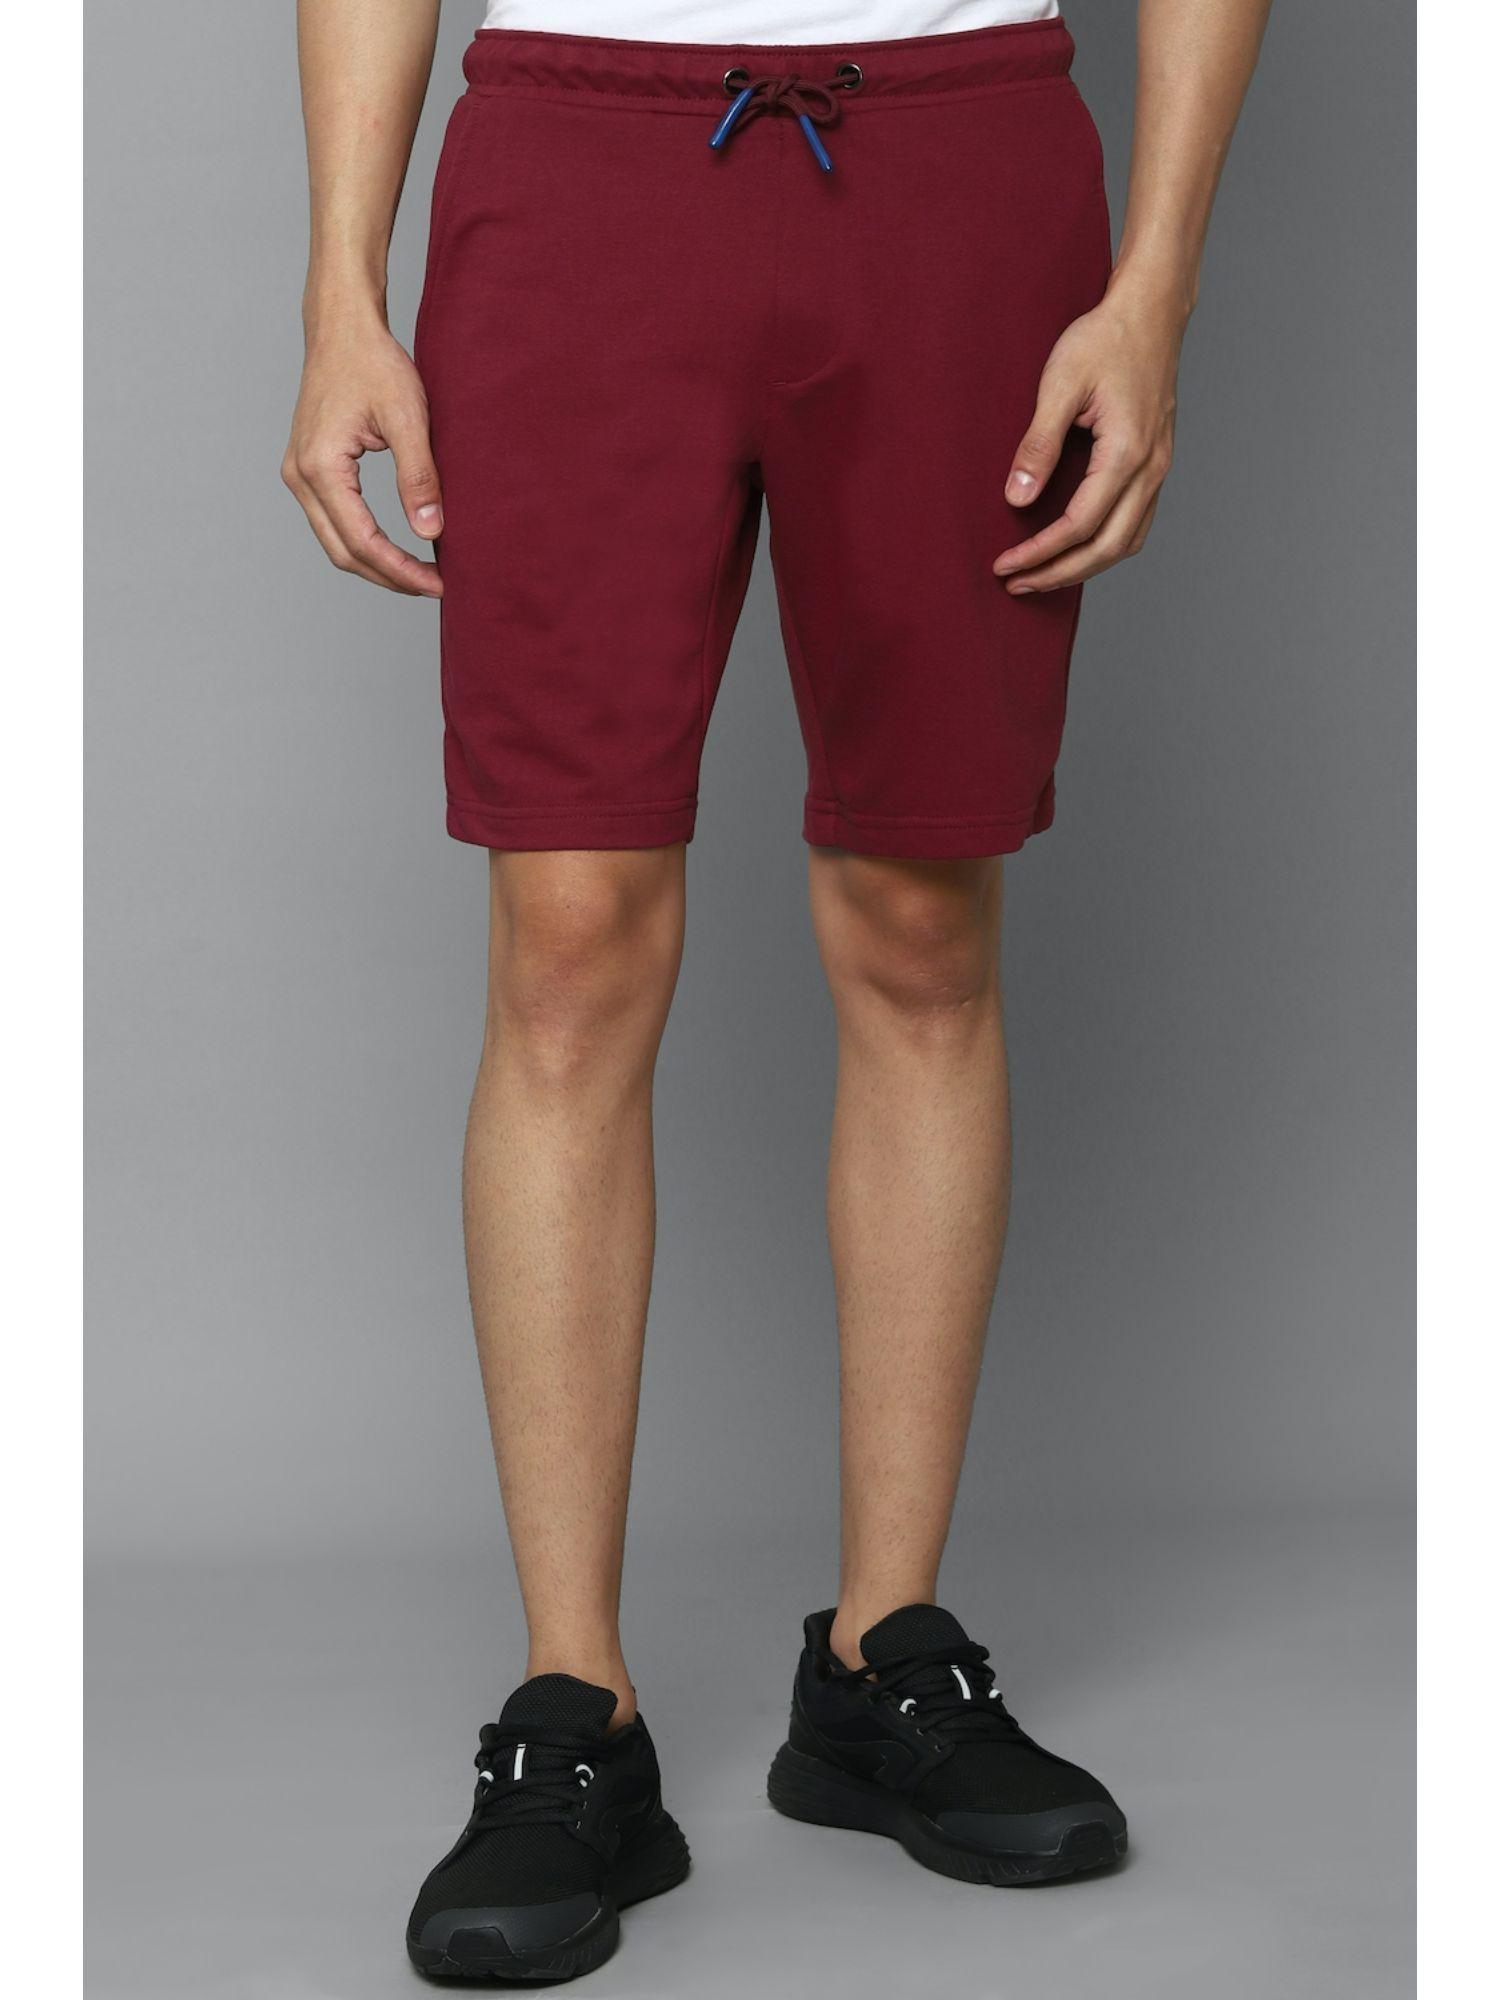 maroon shorts